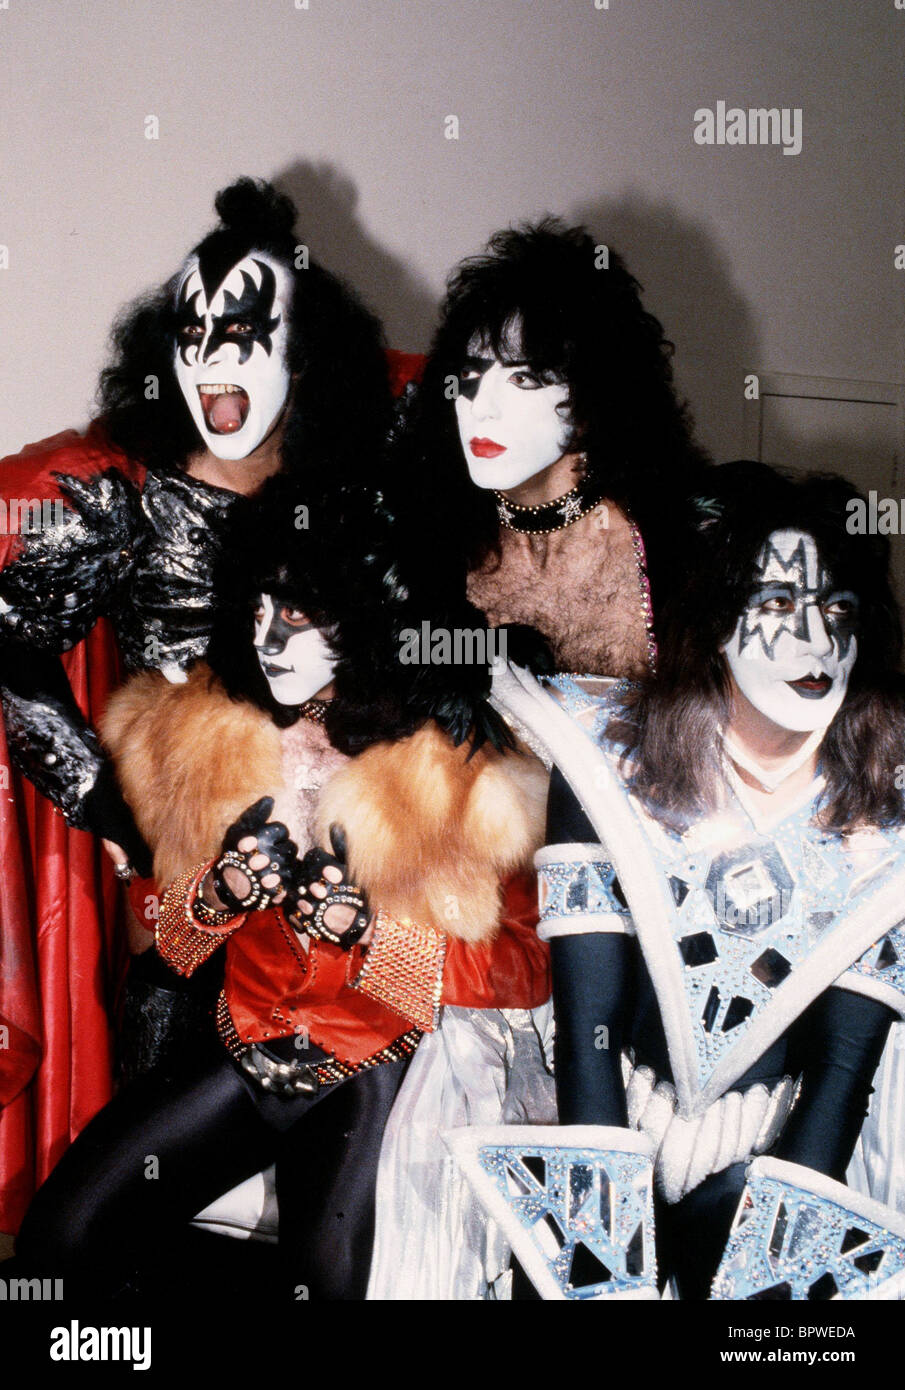 Kiss rock group immagini e fotografie stock ad alta risoluzione - Alamy